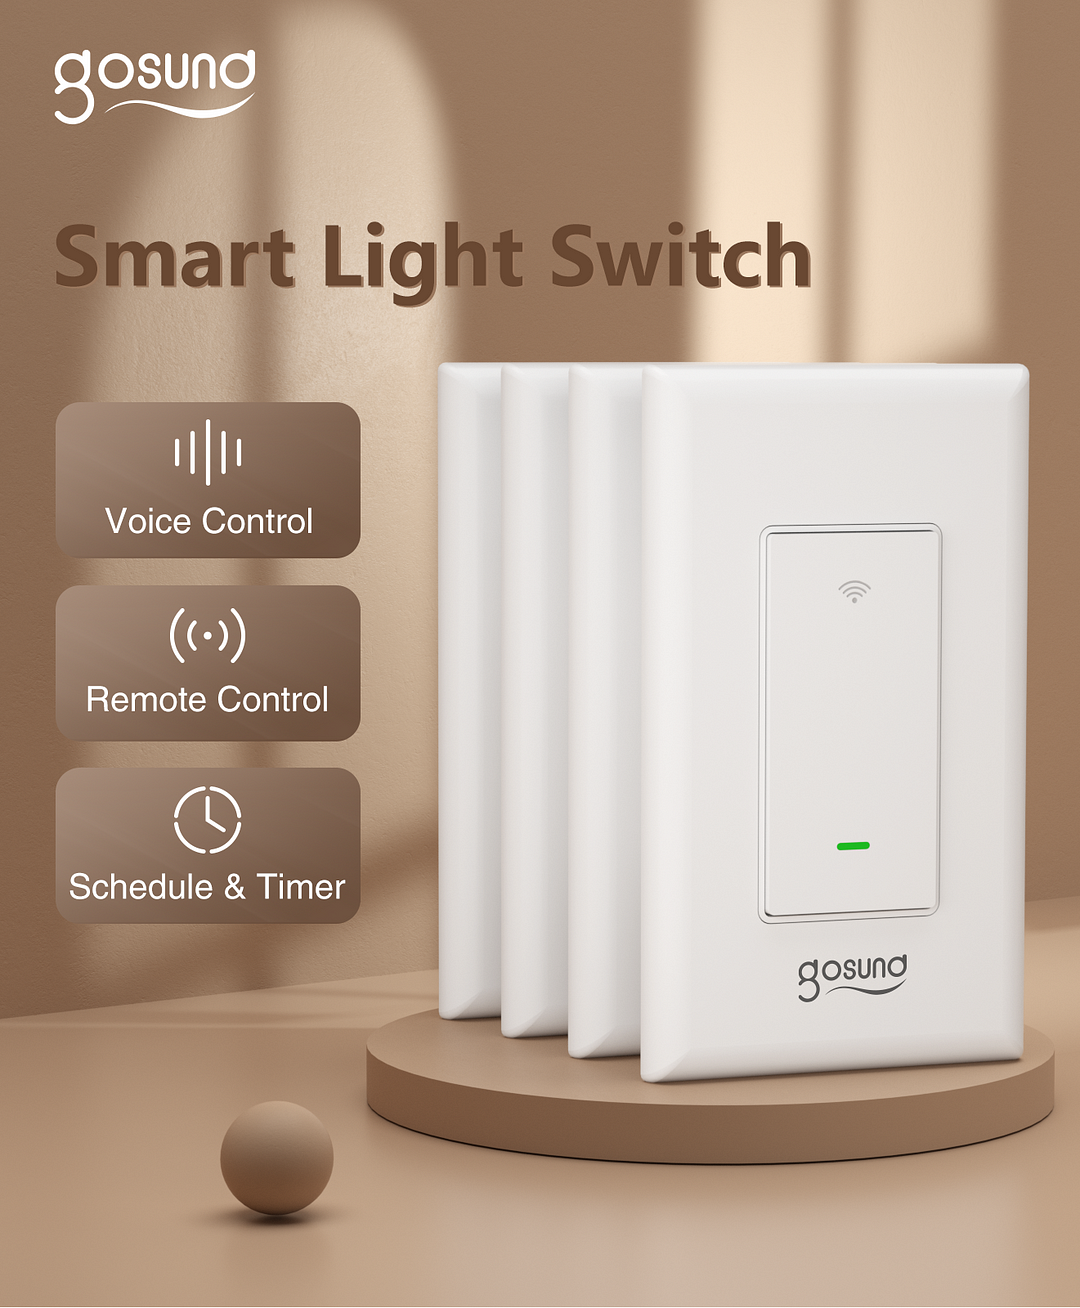 Gosund 3-Way Smart Light Switch SW6 